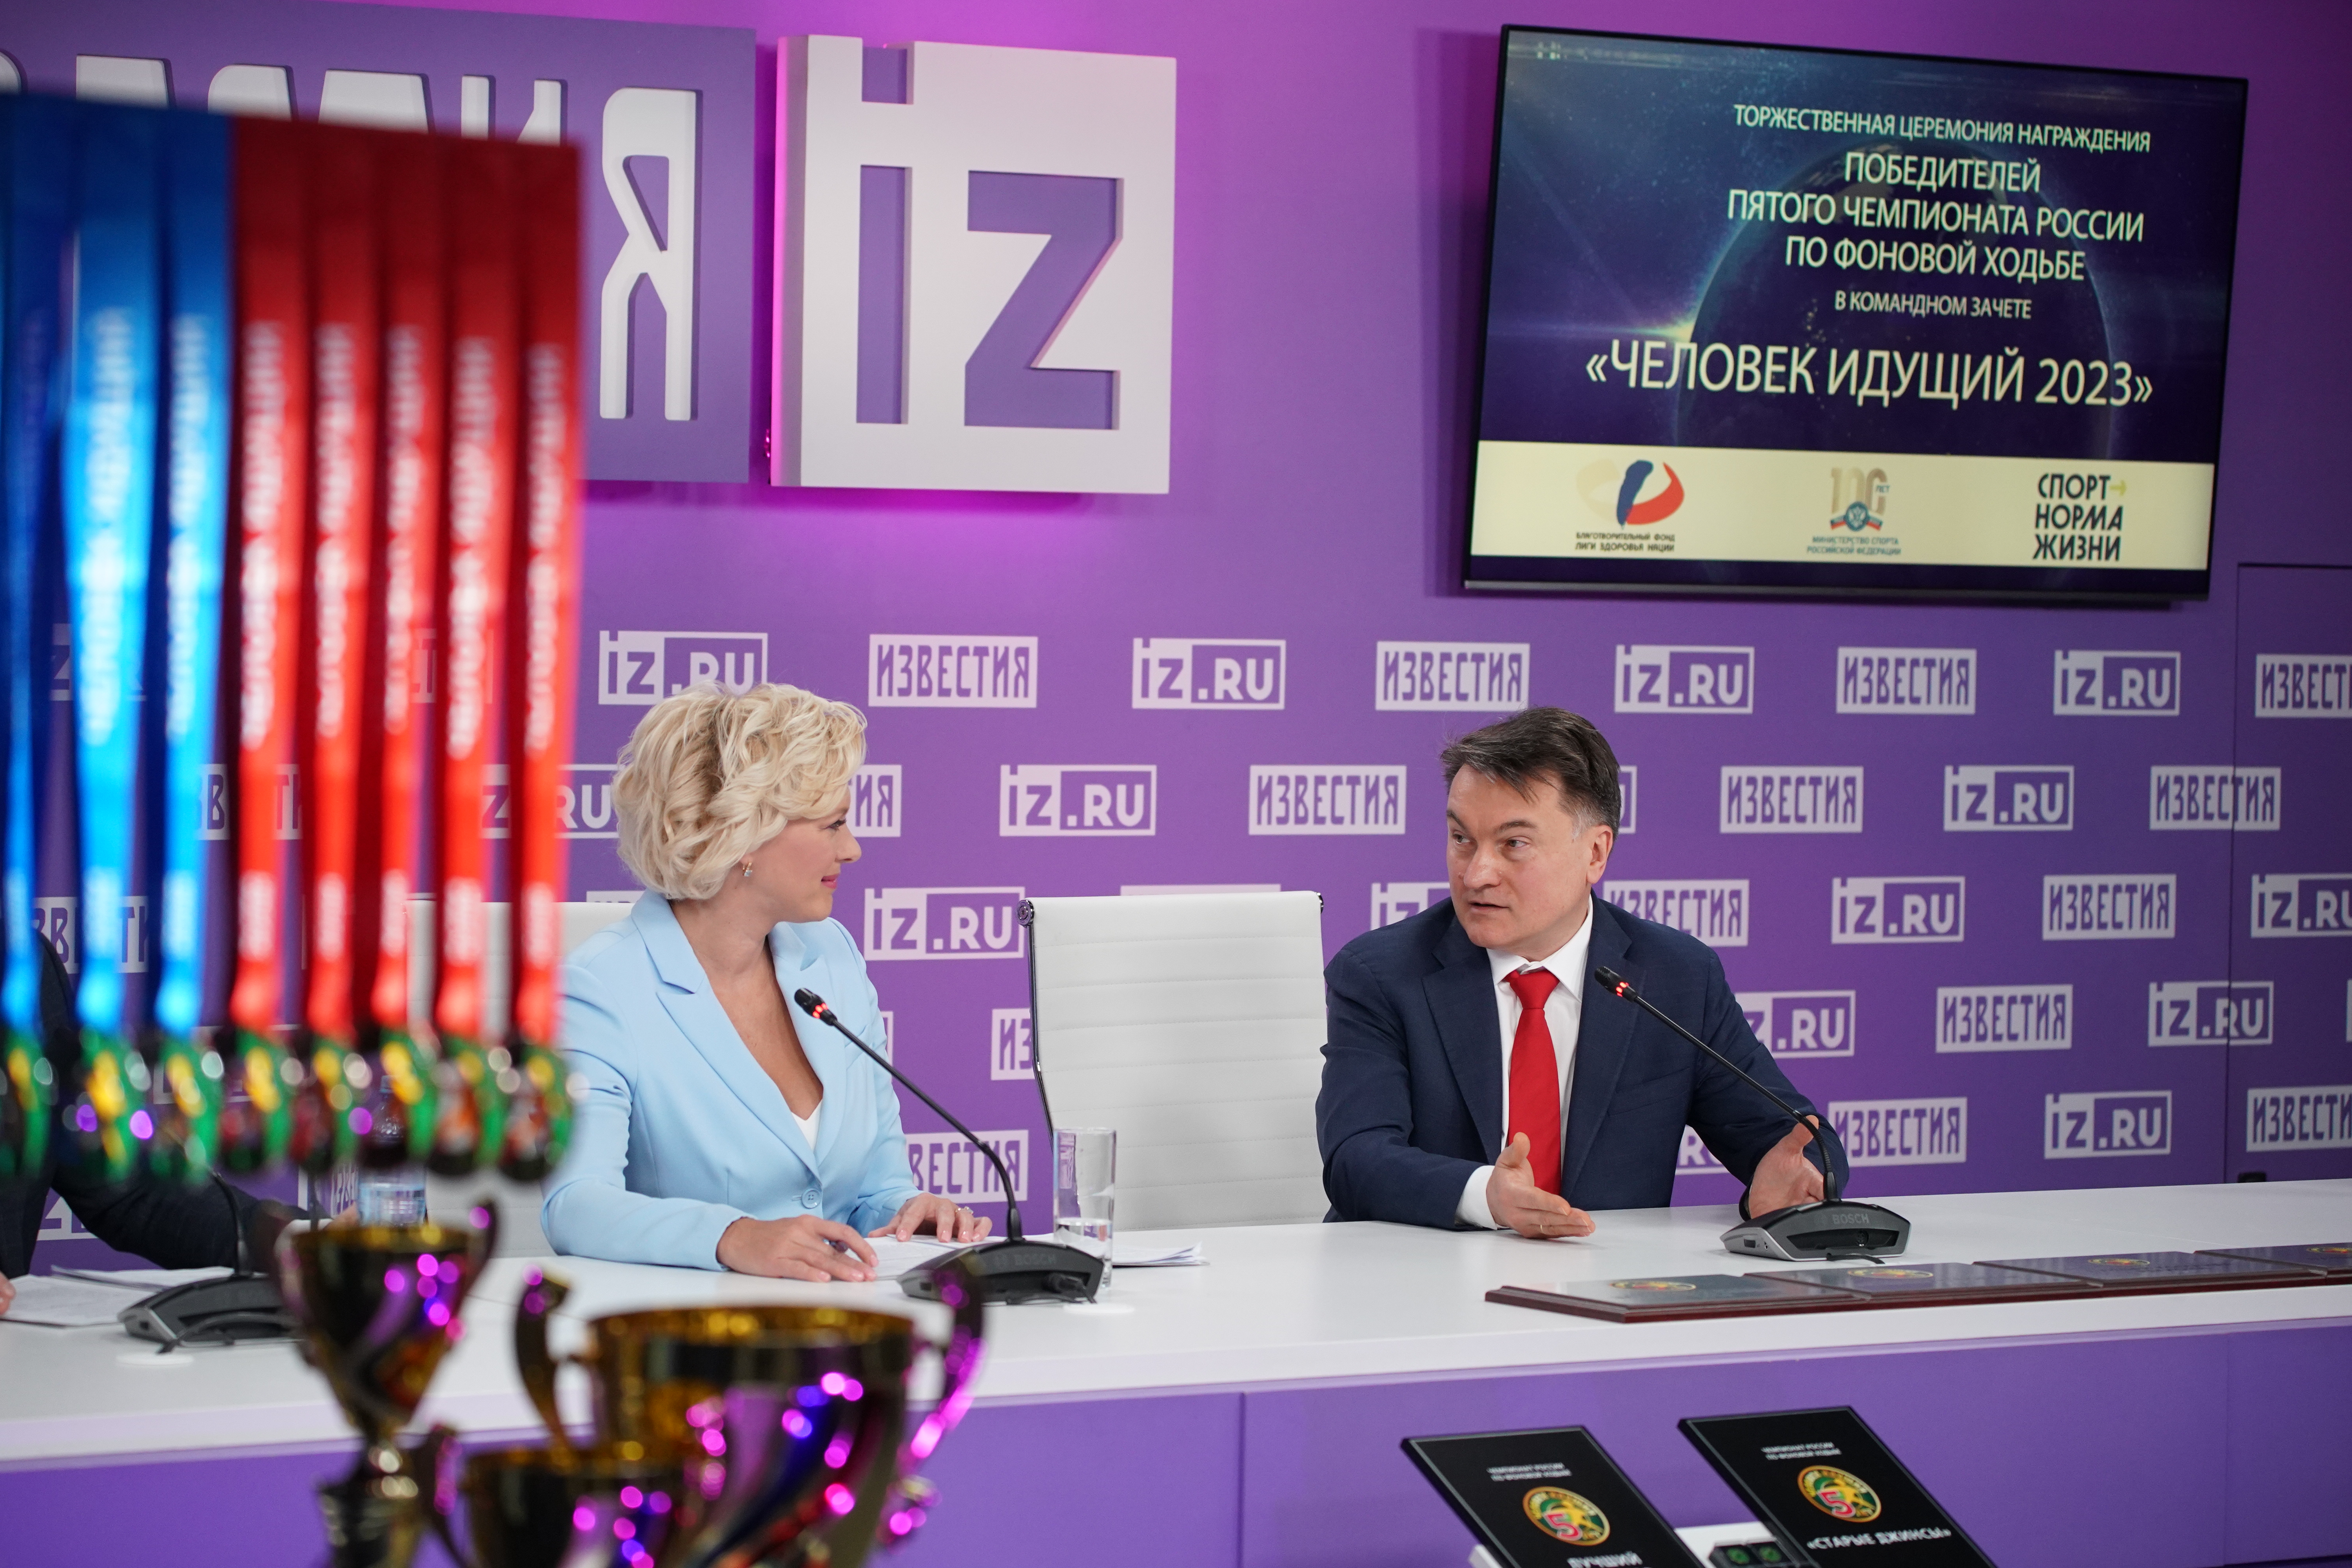 Президент РПО Ю.П. Зинченко принял участие в награждении победителей и призеров Чемпионата России по фоновой ходьбе